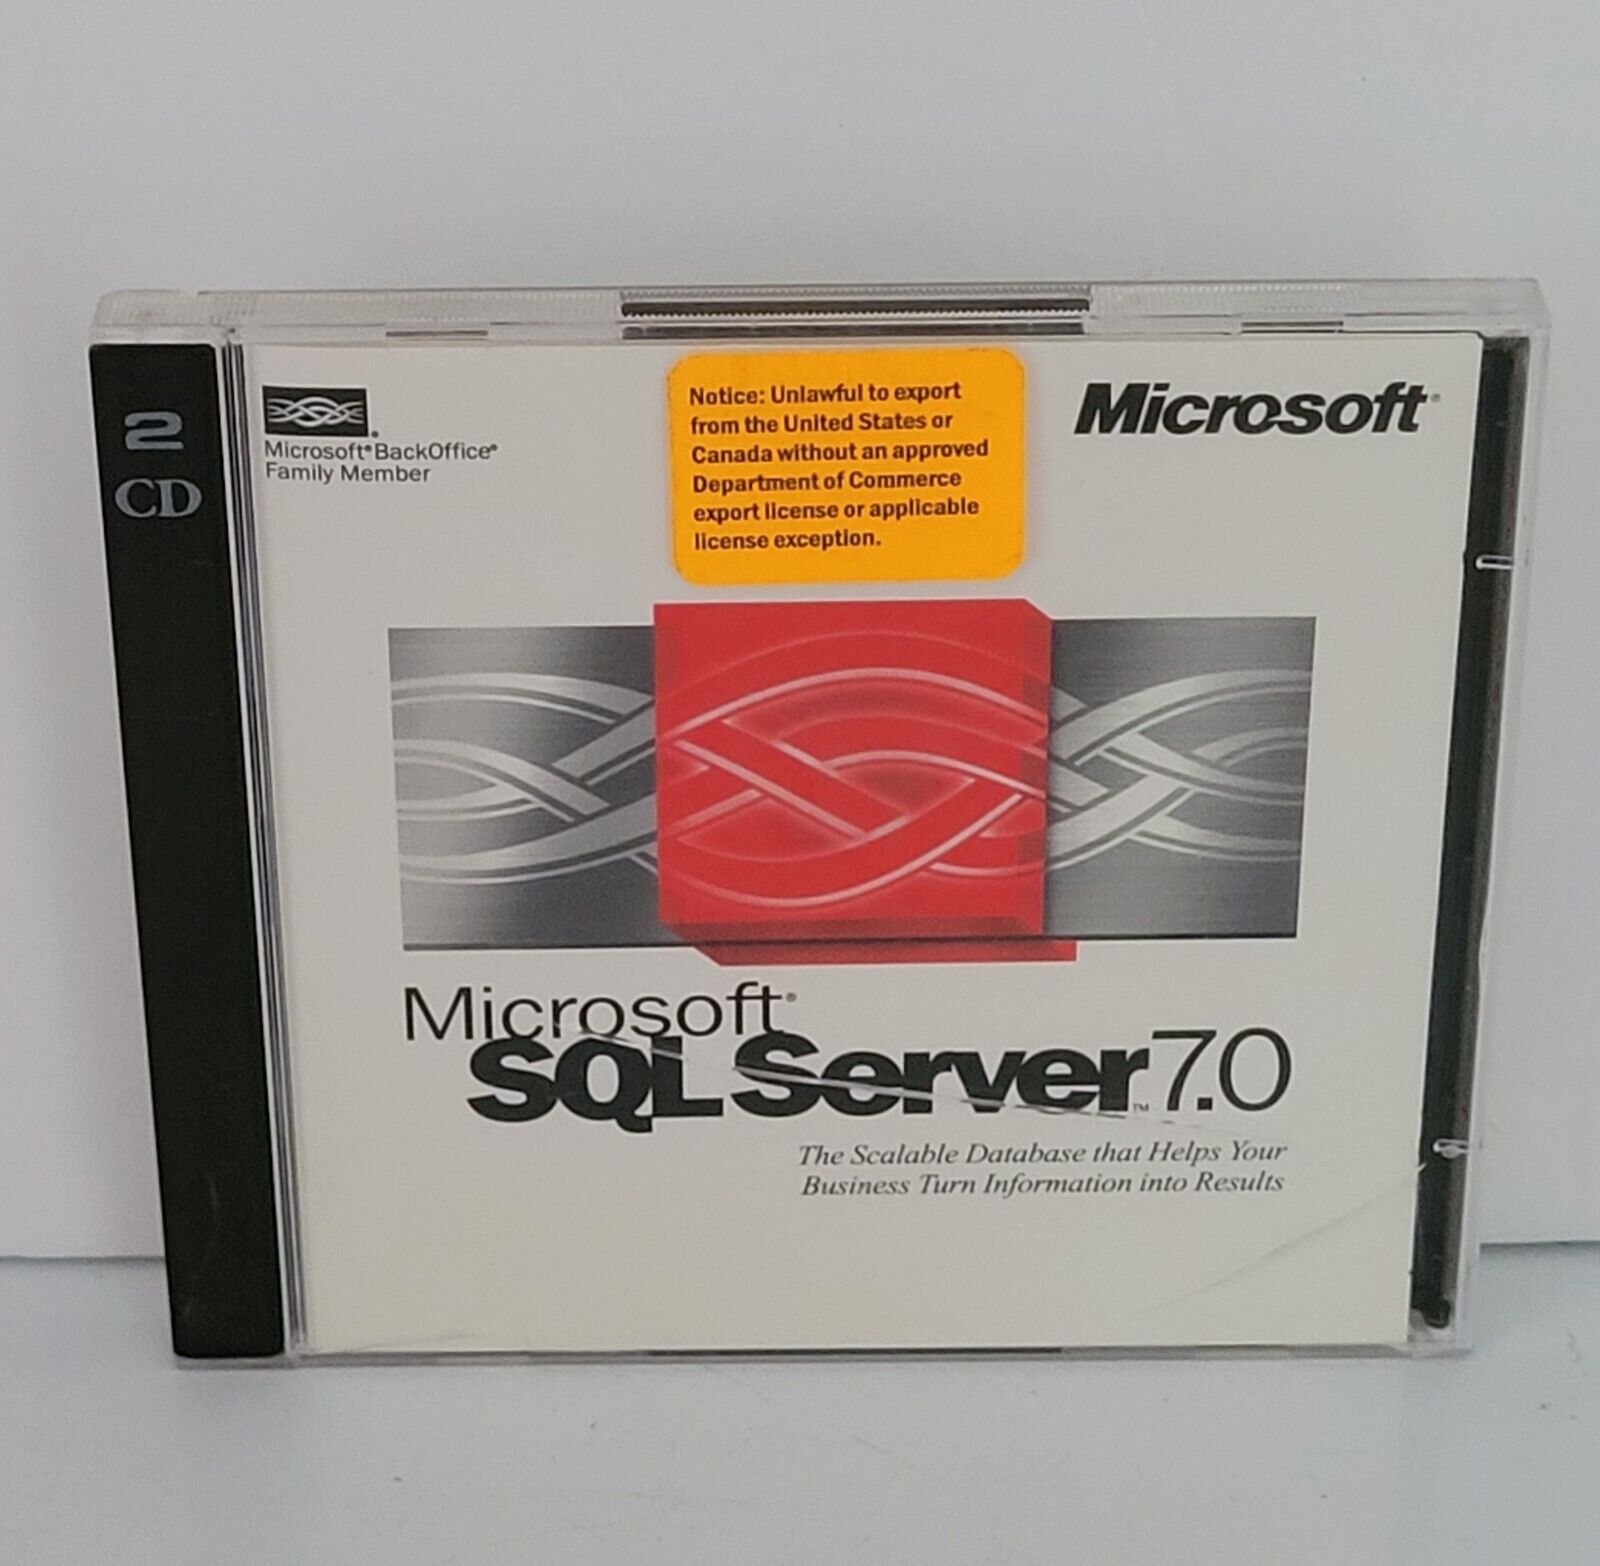 Ultra Rare Vintage 1998 Microsoft SQL SERVER 7.0 Database Software 2-Disc Set 